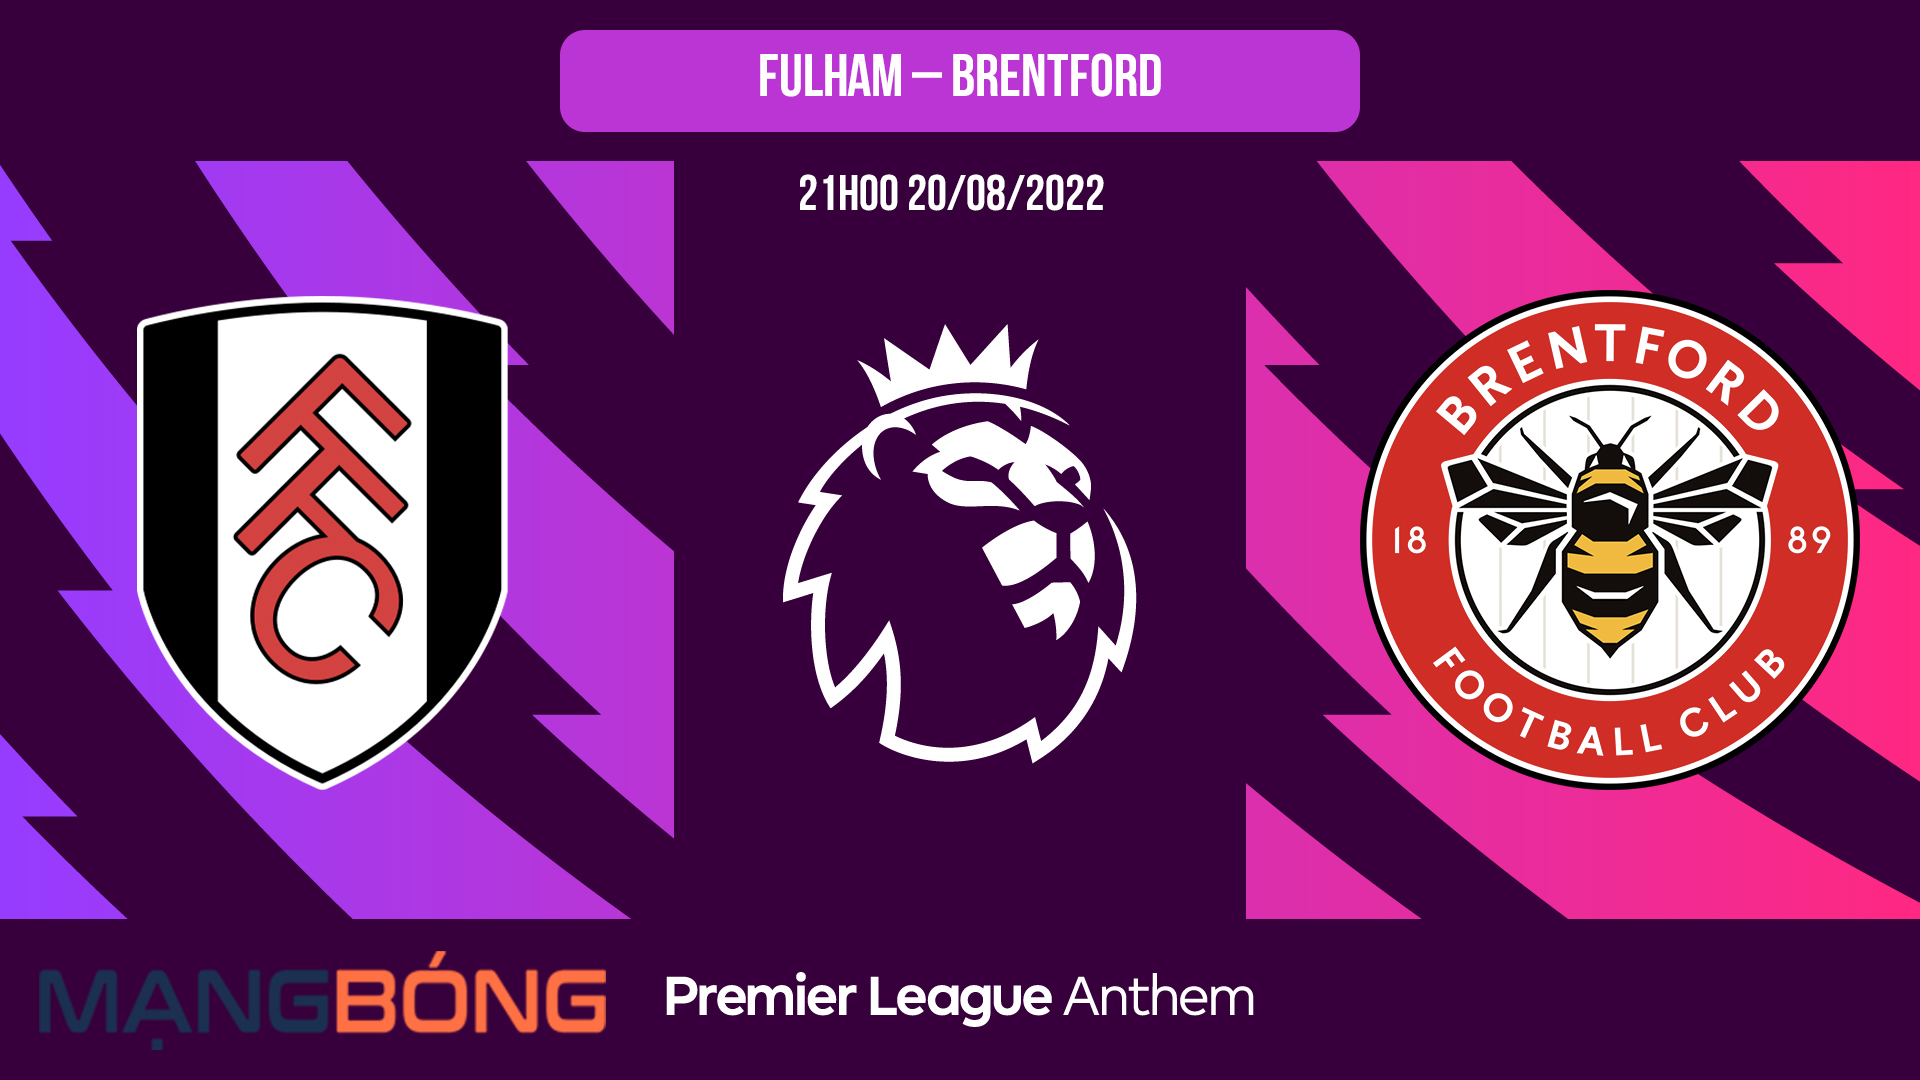 Soi kèo bóng đá Fulham vs Brentford – 21h00 20/08/2022